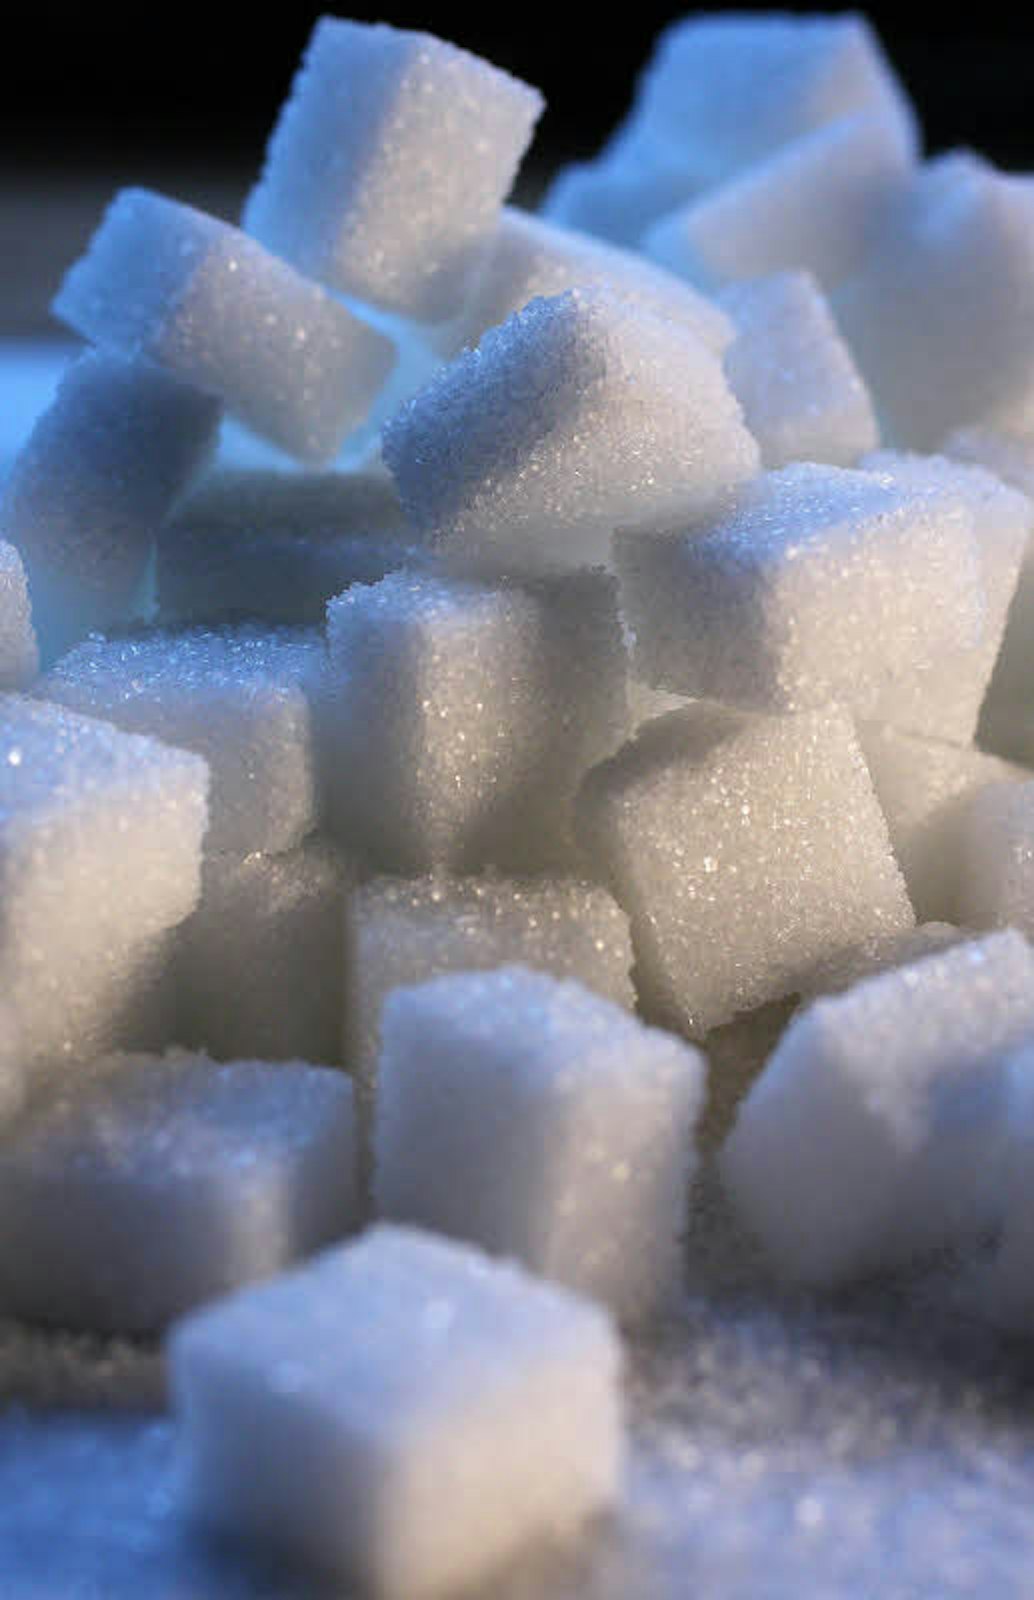 Zucker: Die Vorliebe für Süßes ist dem Menschen angeboren.